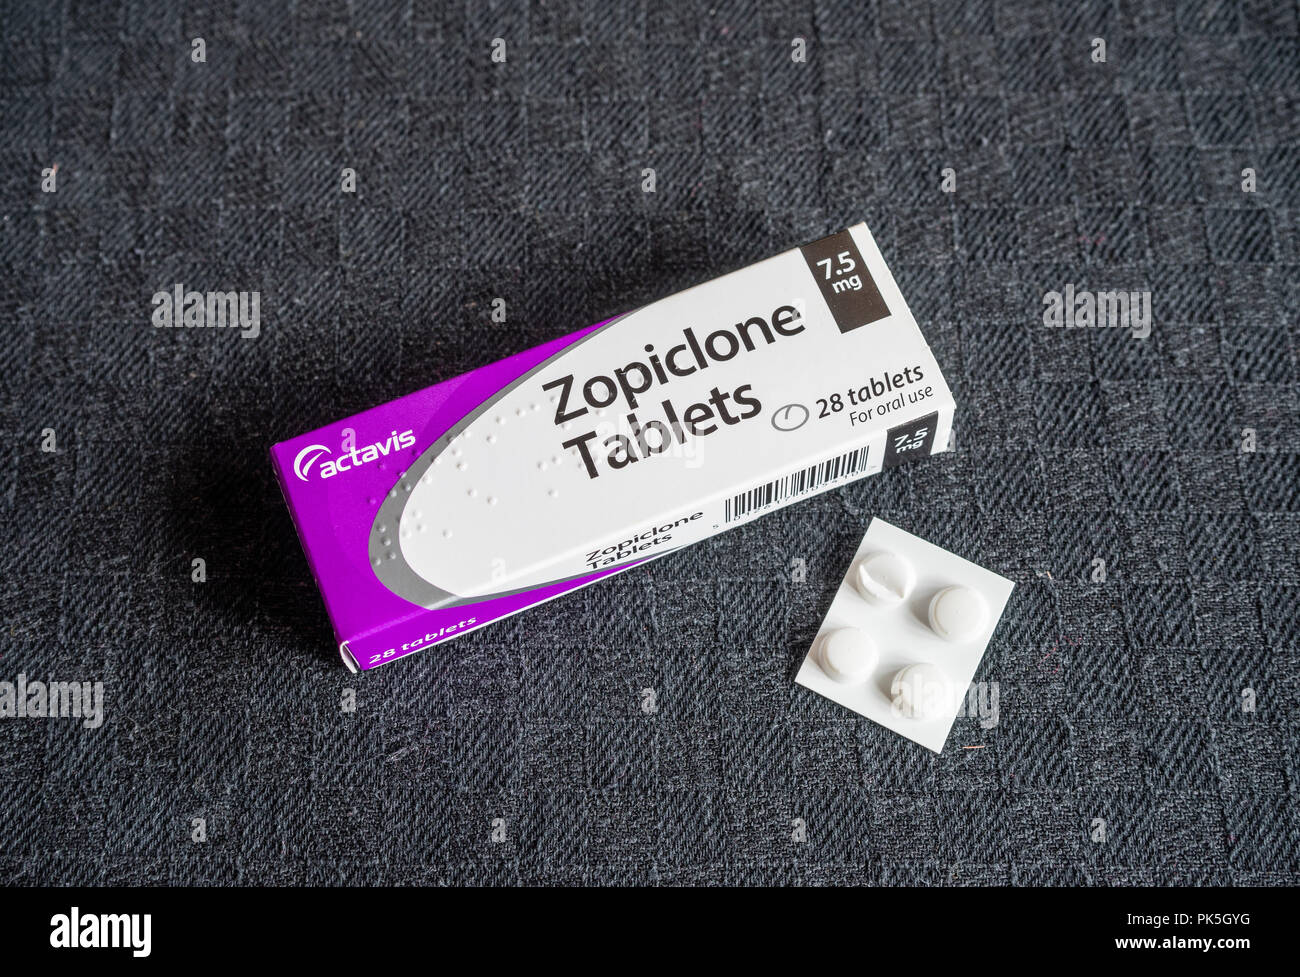 QUESTA È Una FOTO DI SCORTA - Una scatola / confezione da 28 x 7,5 mg Zopiclone prescrizione dormire compresse su sfondo nero Foto Stock